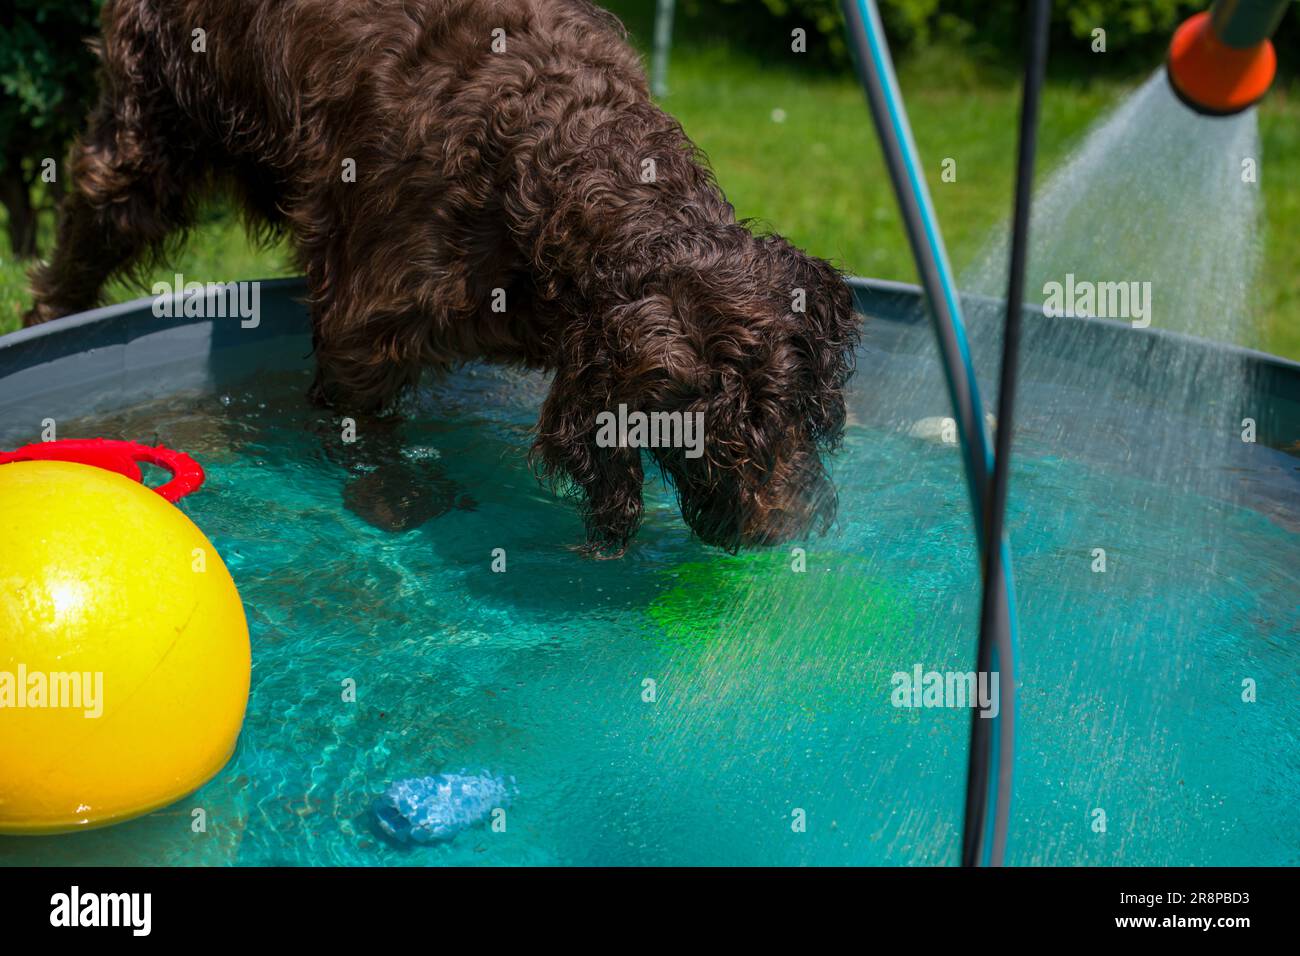 Ein brauner Hund, ein Pudelpointer, spielt an einem heißen Sommertag im Wasser in einem Hundebecken Stockfoto